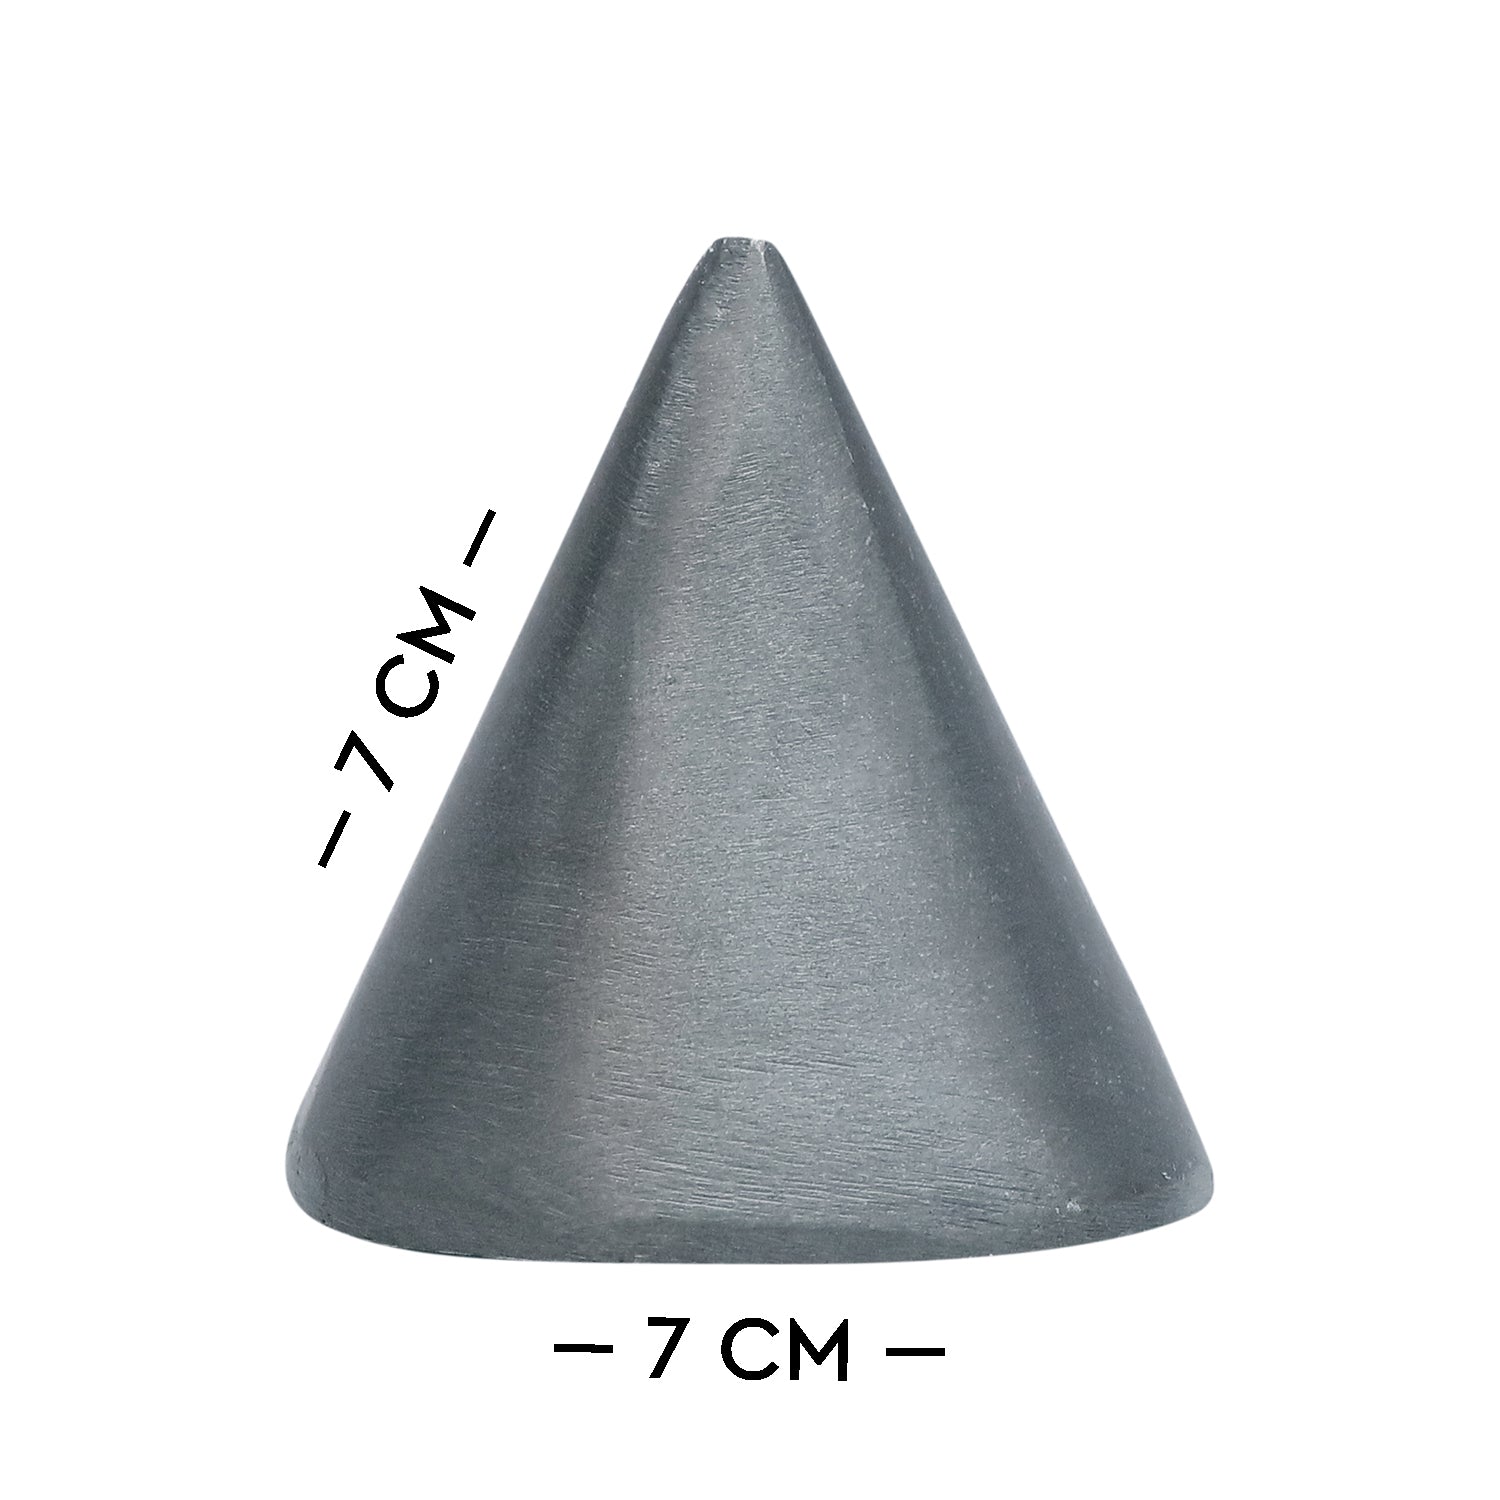 Zinc Round Pyramid 500G - vastu-vigyan